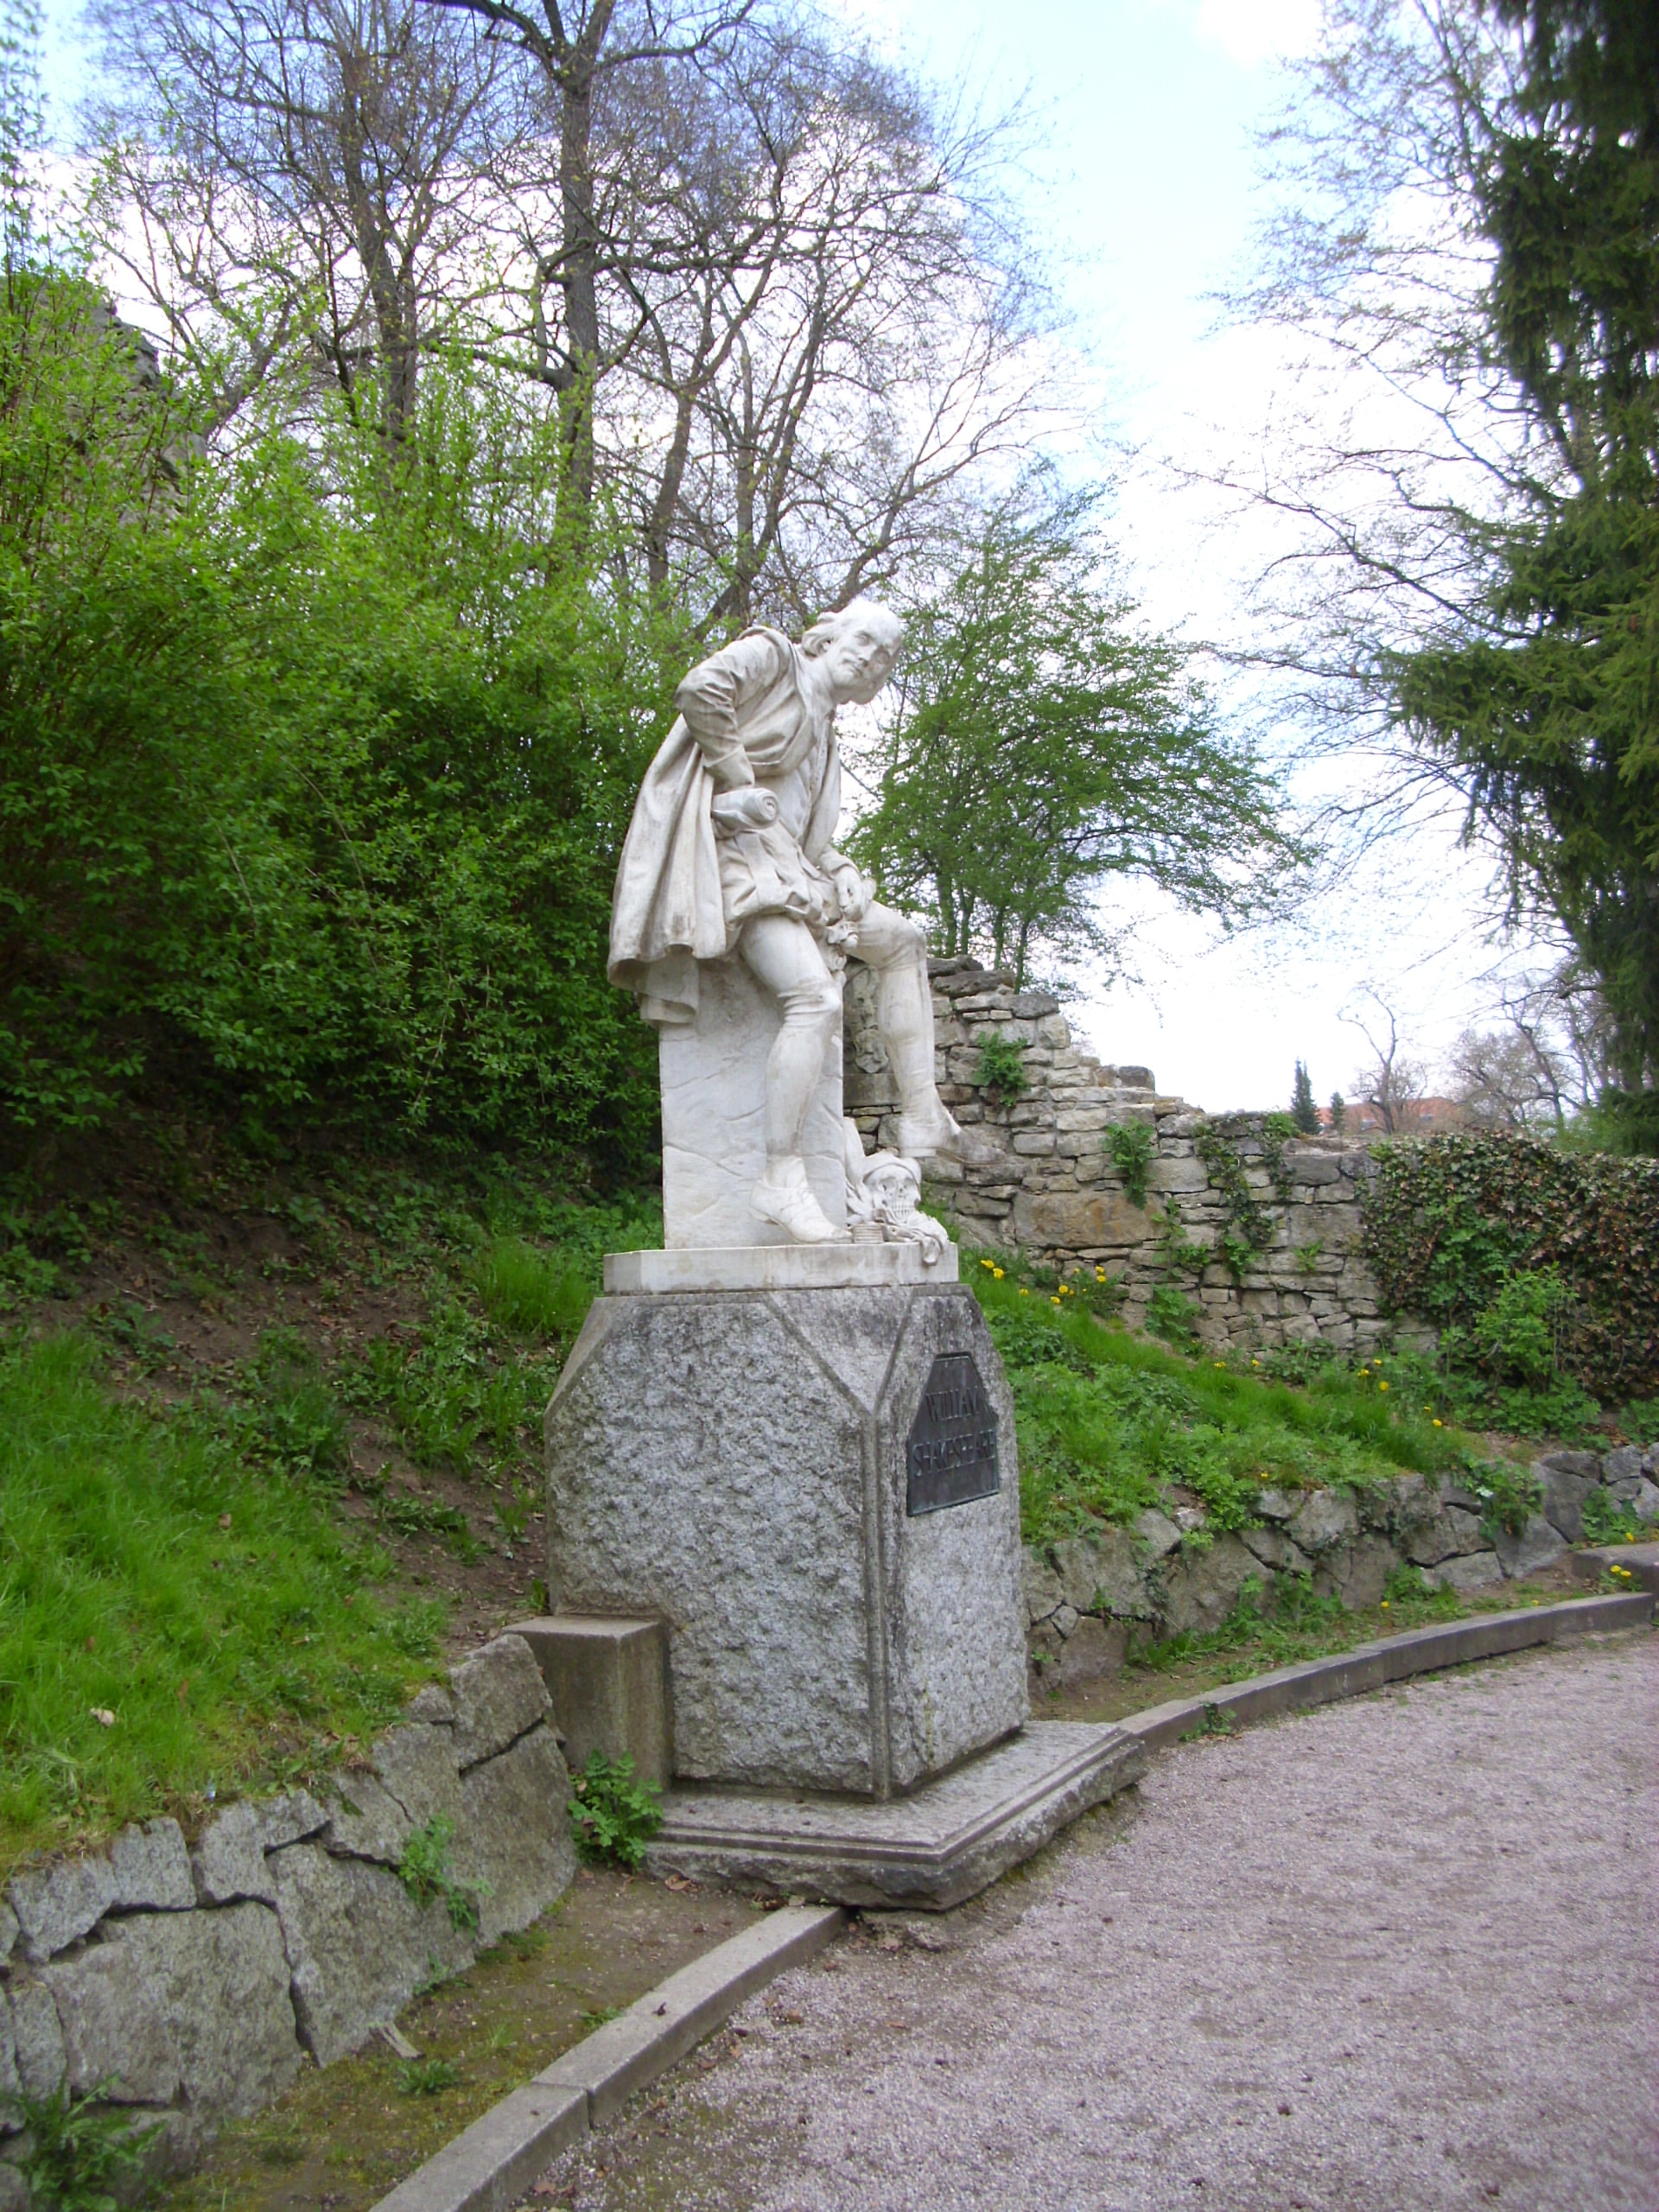 Farbfoto: Das Shakespeare-Denkmal an der künstlichen Ruine im Park an der Ilm in Weimar am Sonntag, dem 22. April im Jahre 2012. Fotograf: Bernd Paepcke.